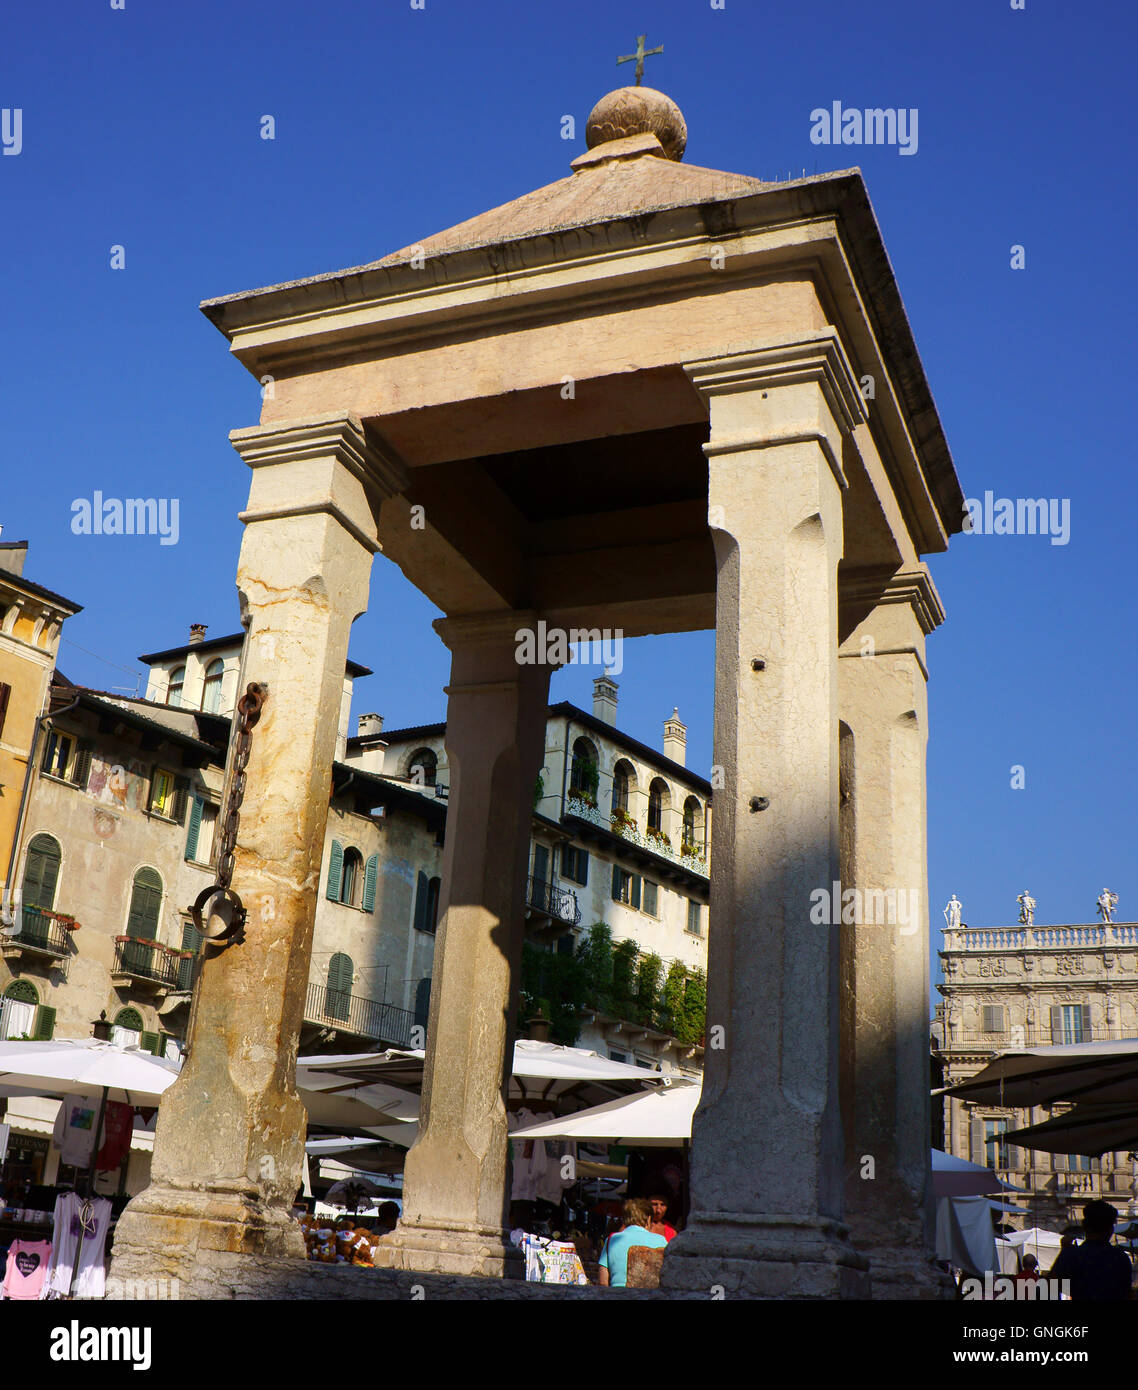 Pillory on Piazza Erbe, Verona, Italy Stock Photo